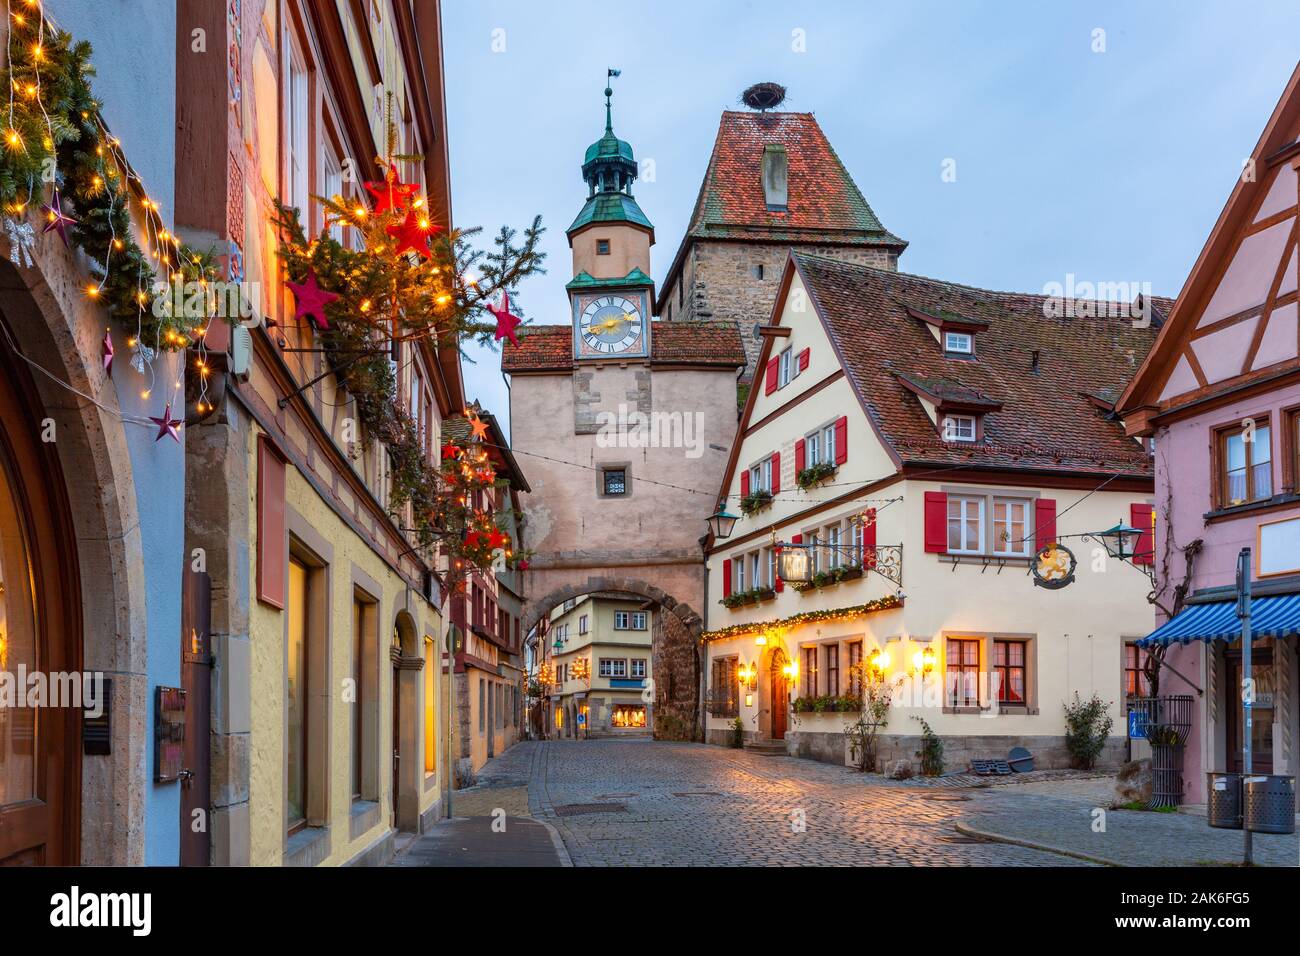 La calle de Navidad iluminado y decorado con la puerta y la torre Markusturm en la antigua ciudad medieval de Rothenburg ob der Tauber, Baviera, Alemania del sur Foto de stock